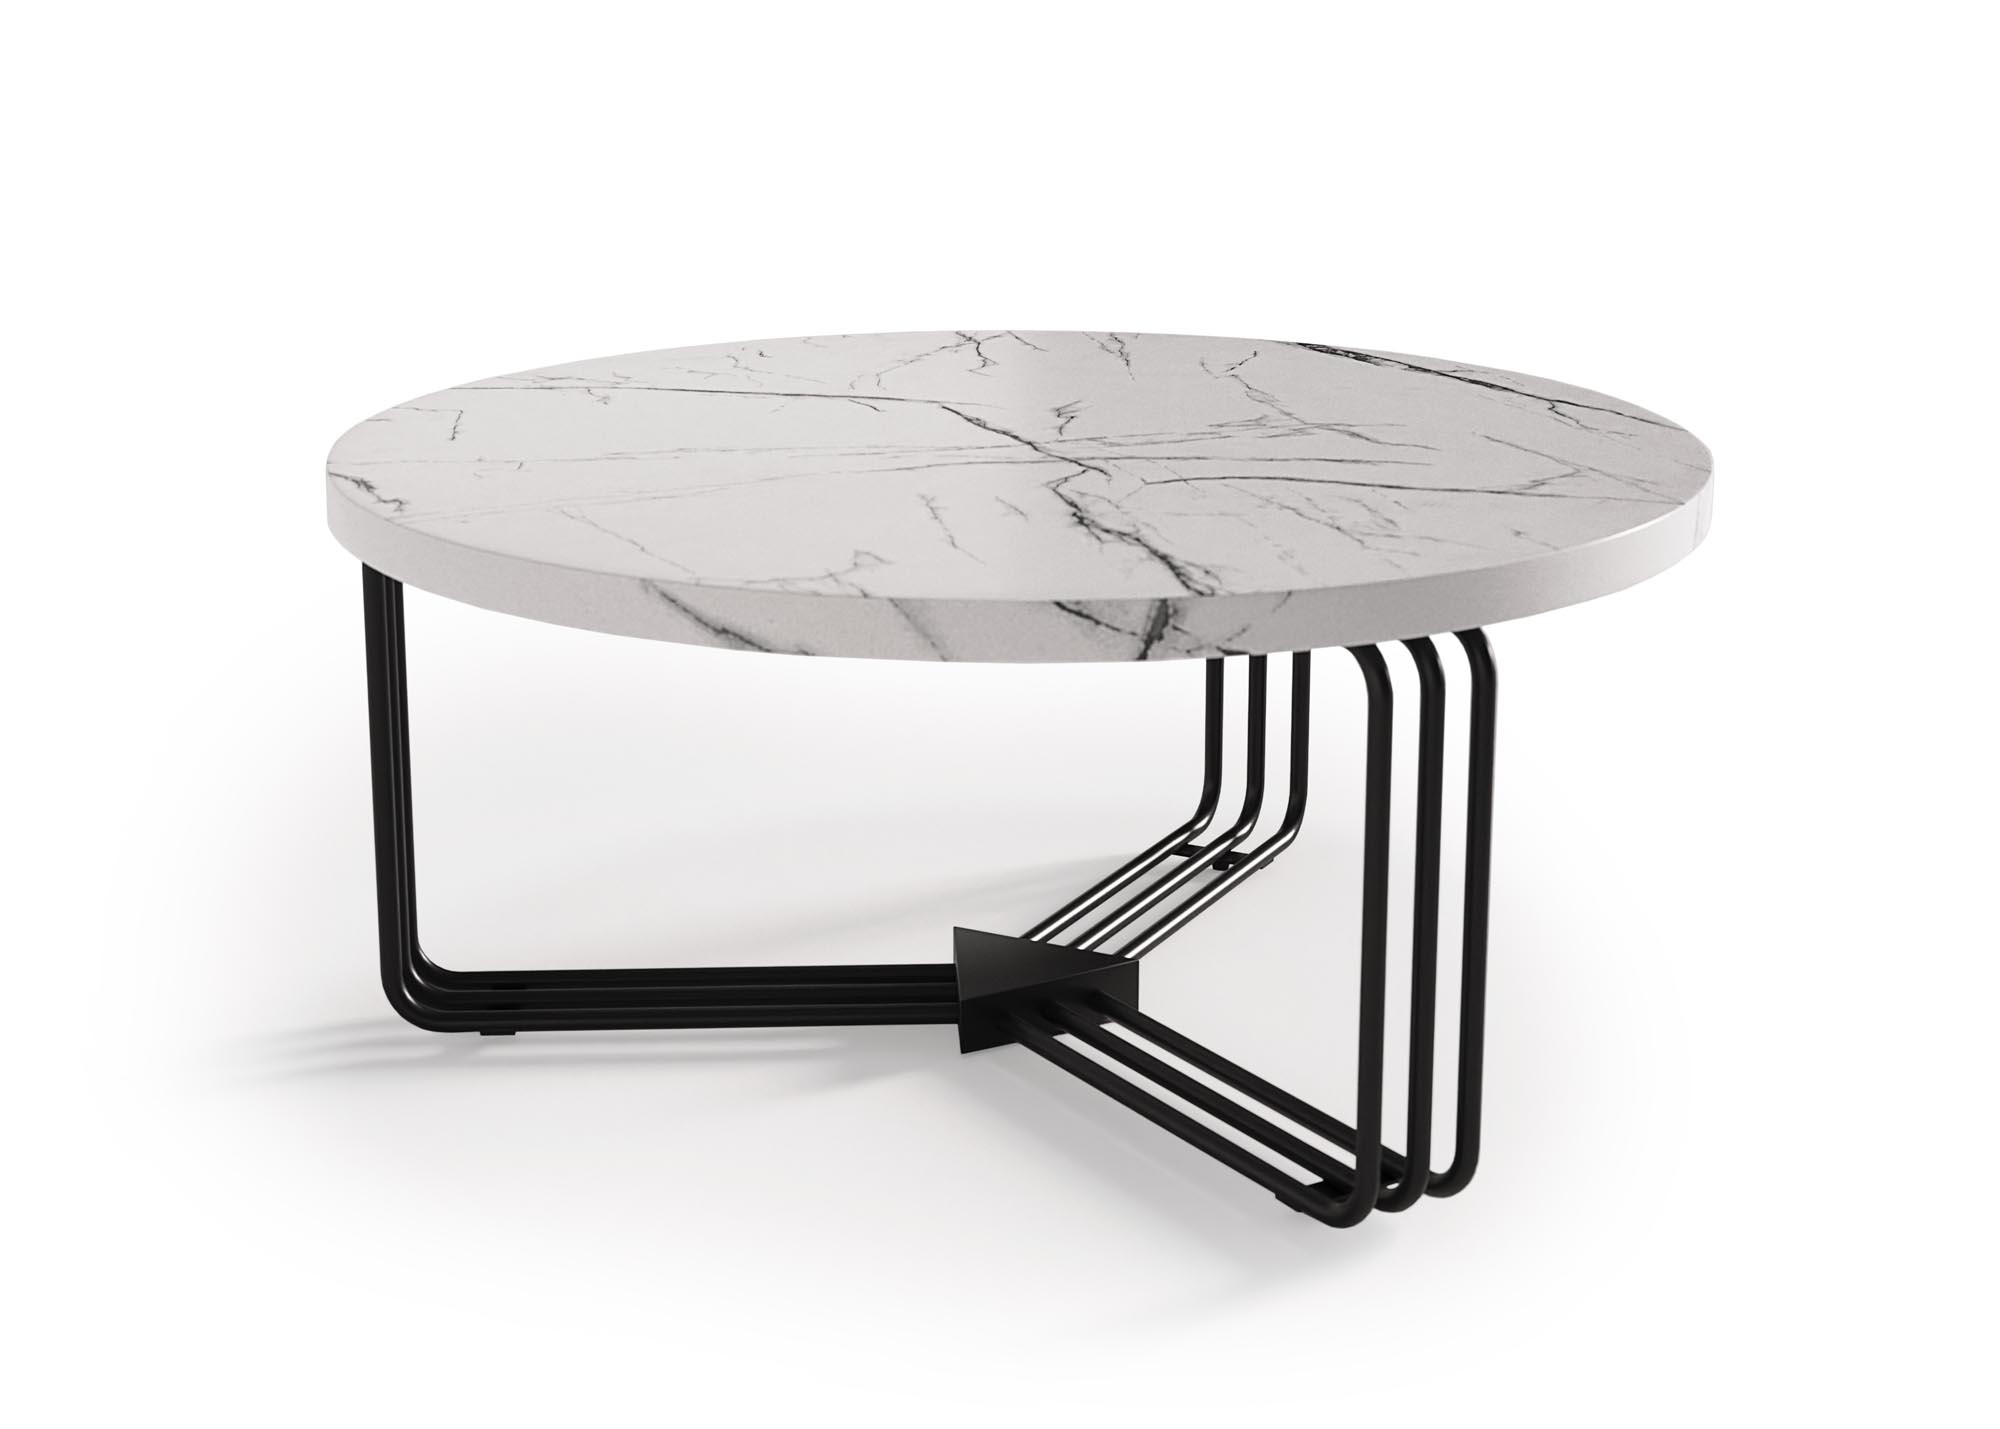 ANTICA Konferenční stolek Deska - Bílý mramor, Rošt - Černý (2p=1szt) antica Konferenční stolek Deska - Bílý mramor, Rošt - Černý